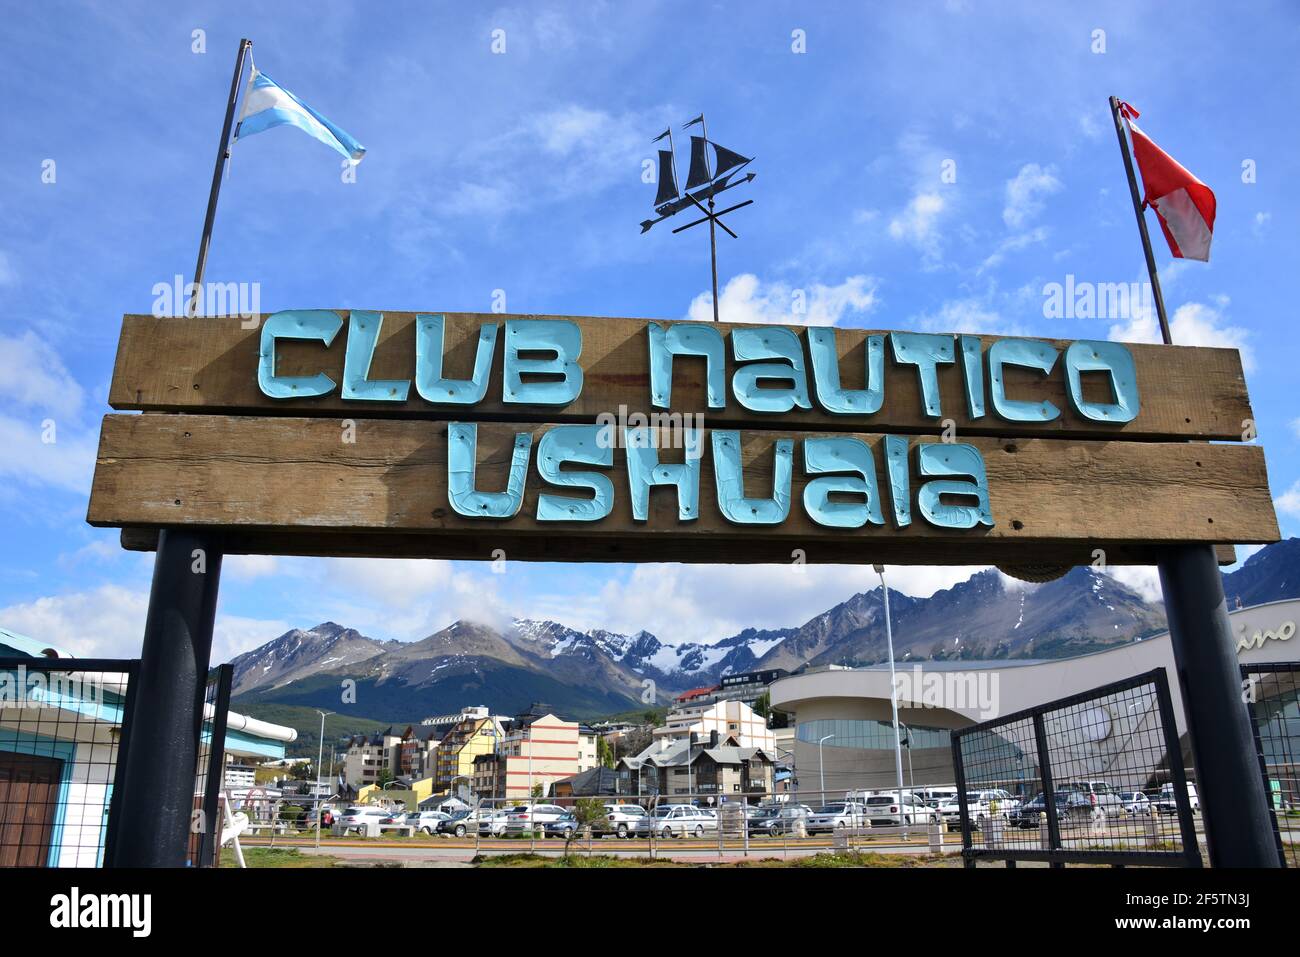 Ushuaia est une ville Argentine située à l'extrémité sud du pays dans la Tierra del Fuego, surnommée « la fin du monde » Banque D'Images